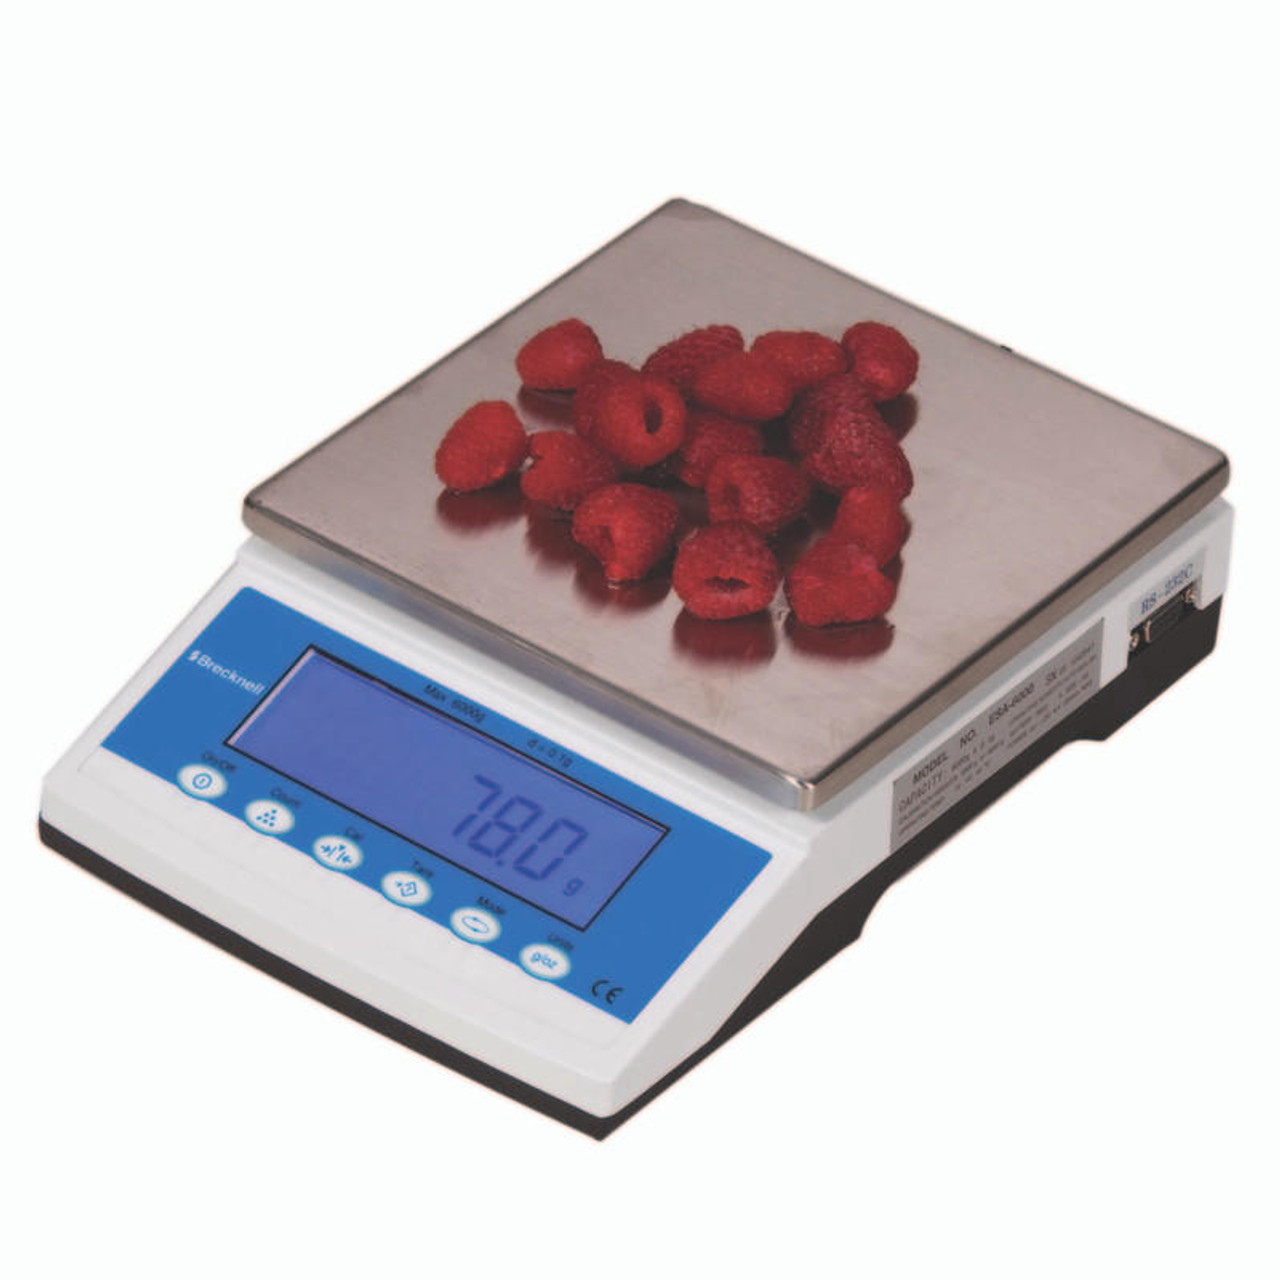 Scale Electronic 15 kg Max - 0.1 g Precision Digital Scale Laboratory  Kitchen Scientific